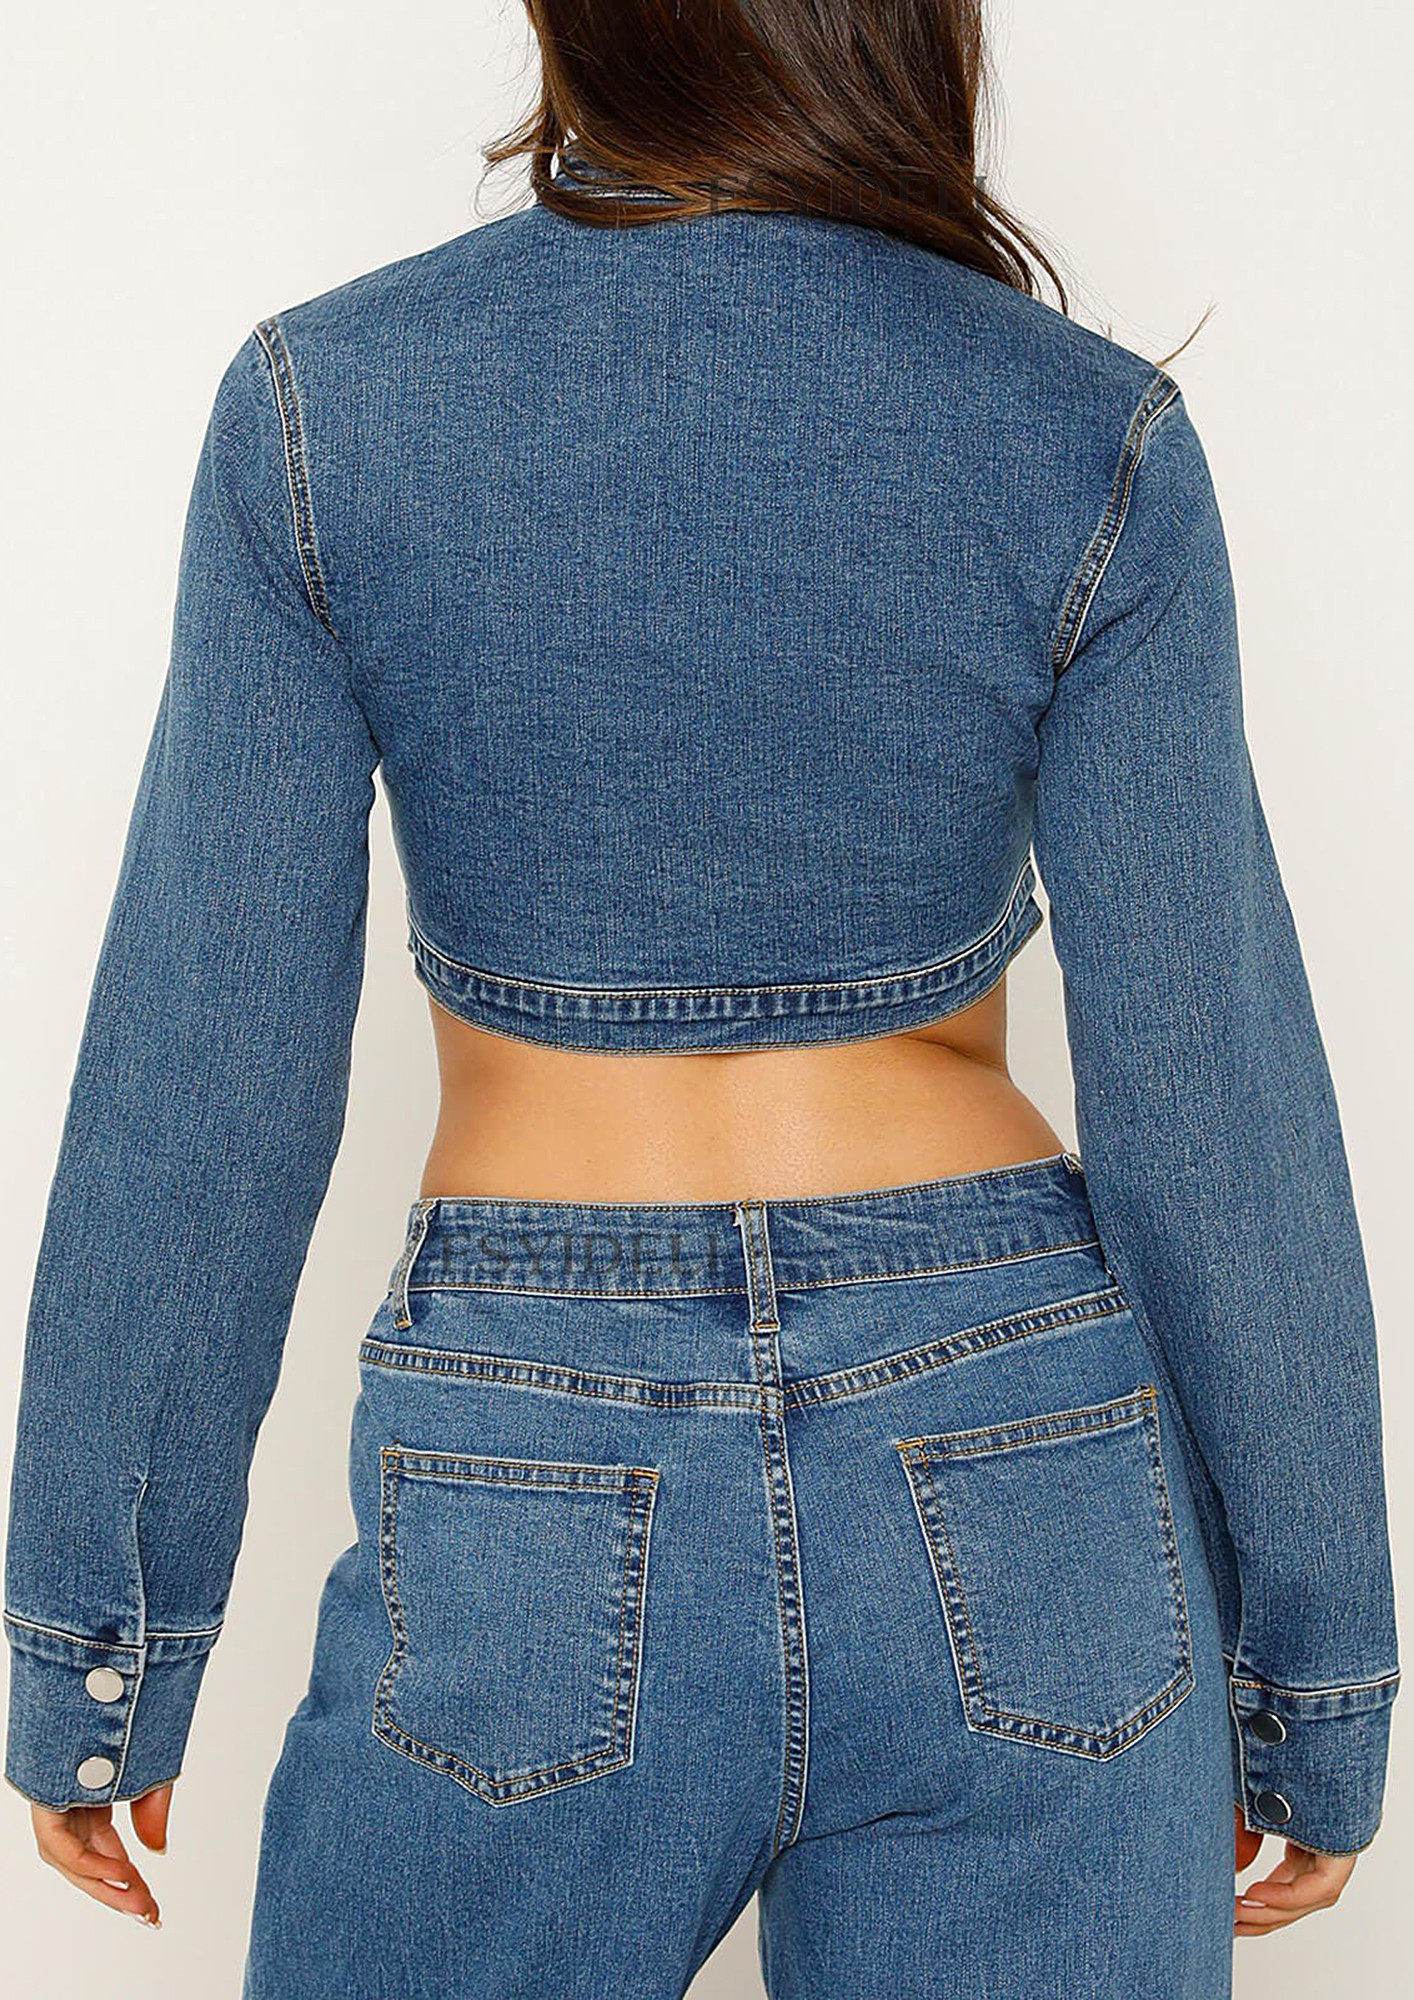 Blue Off-Shoulder Denim Style Crop Top | Rose - BlackPink - Fashion Chingu